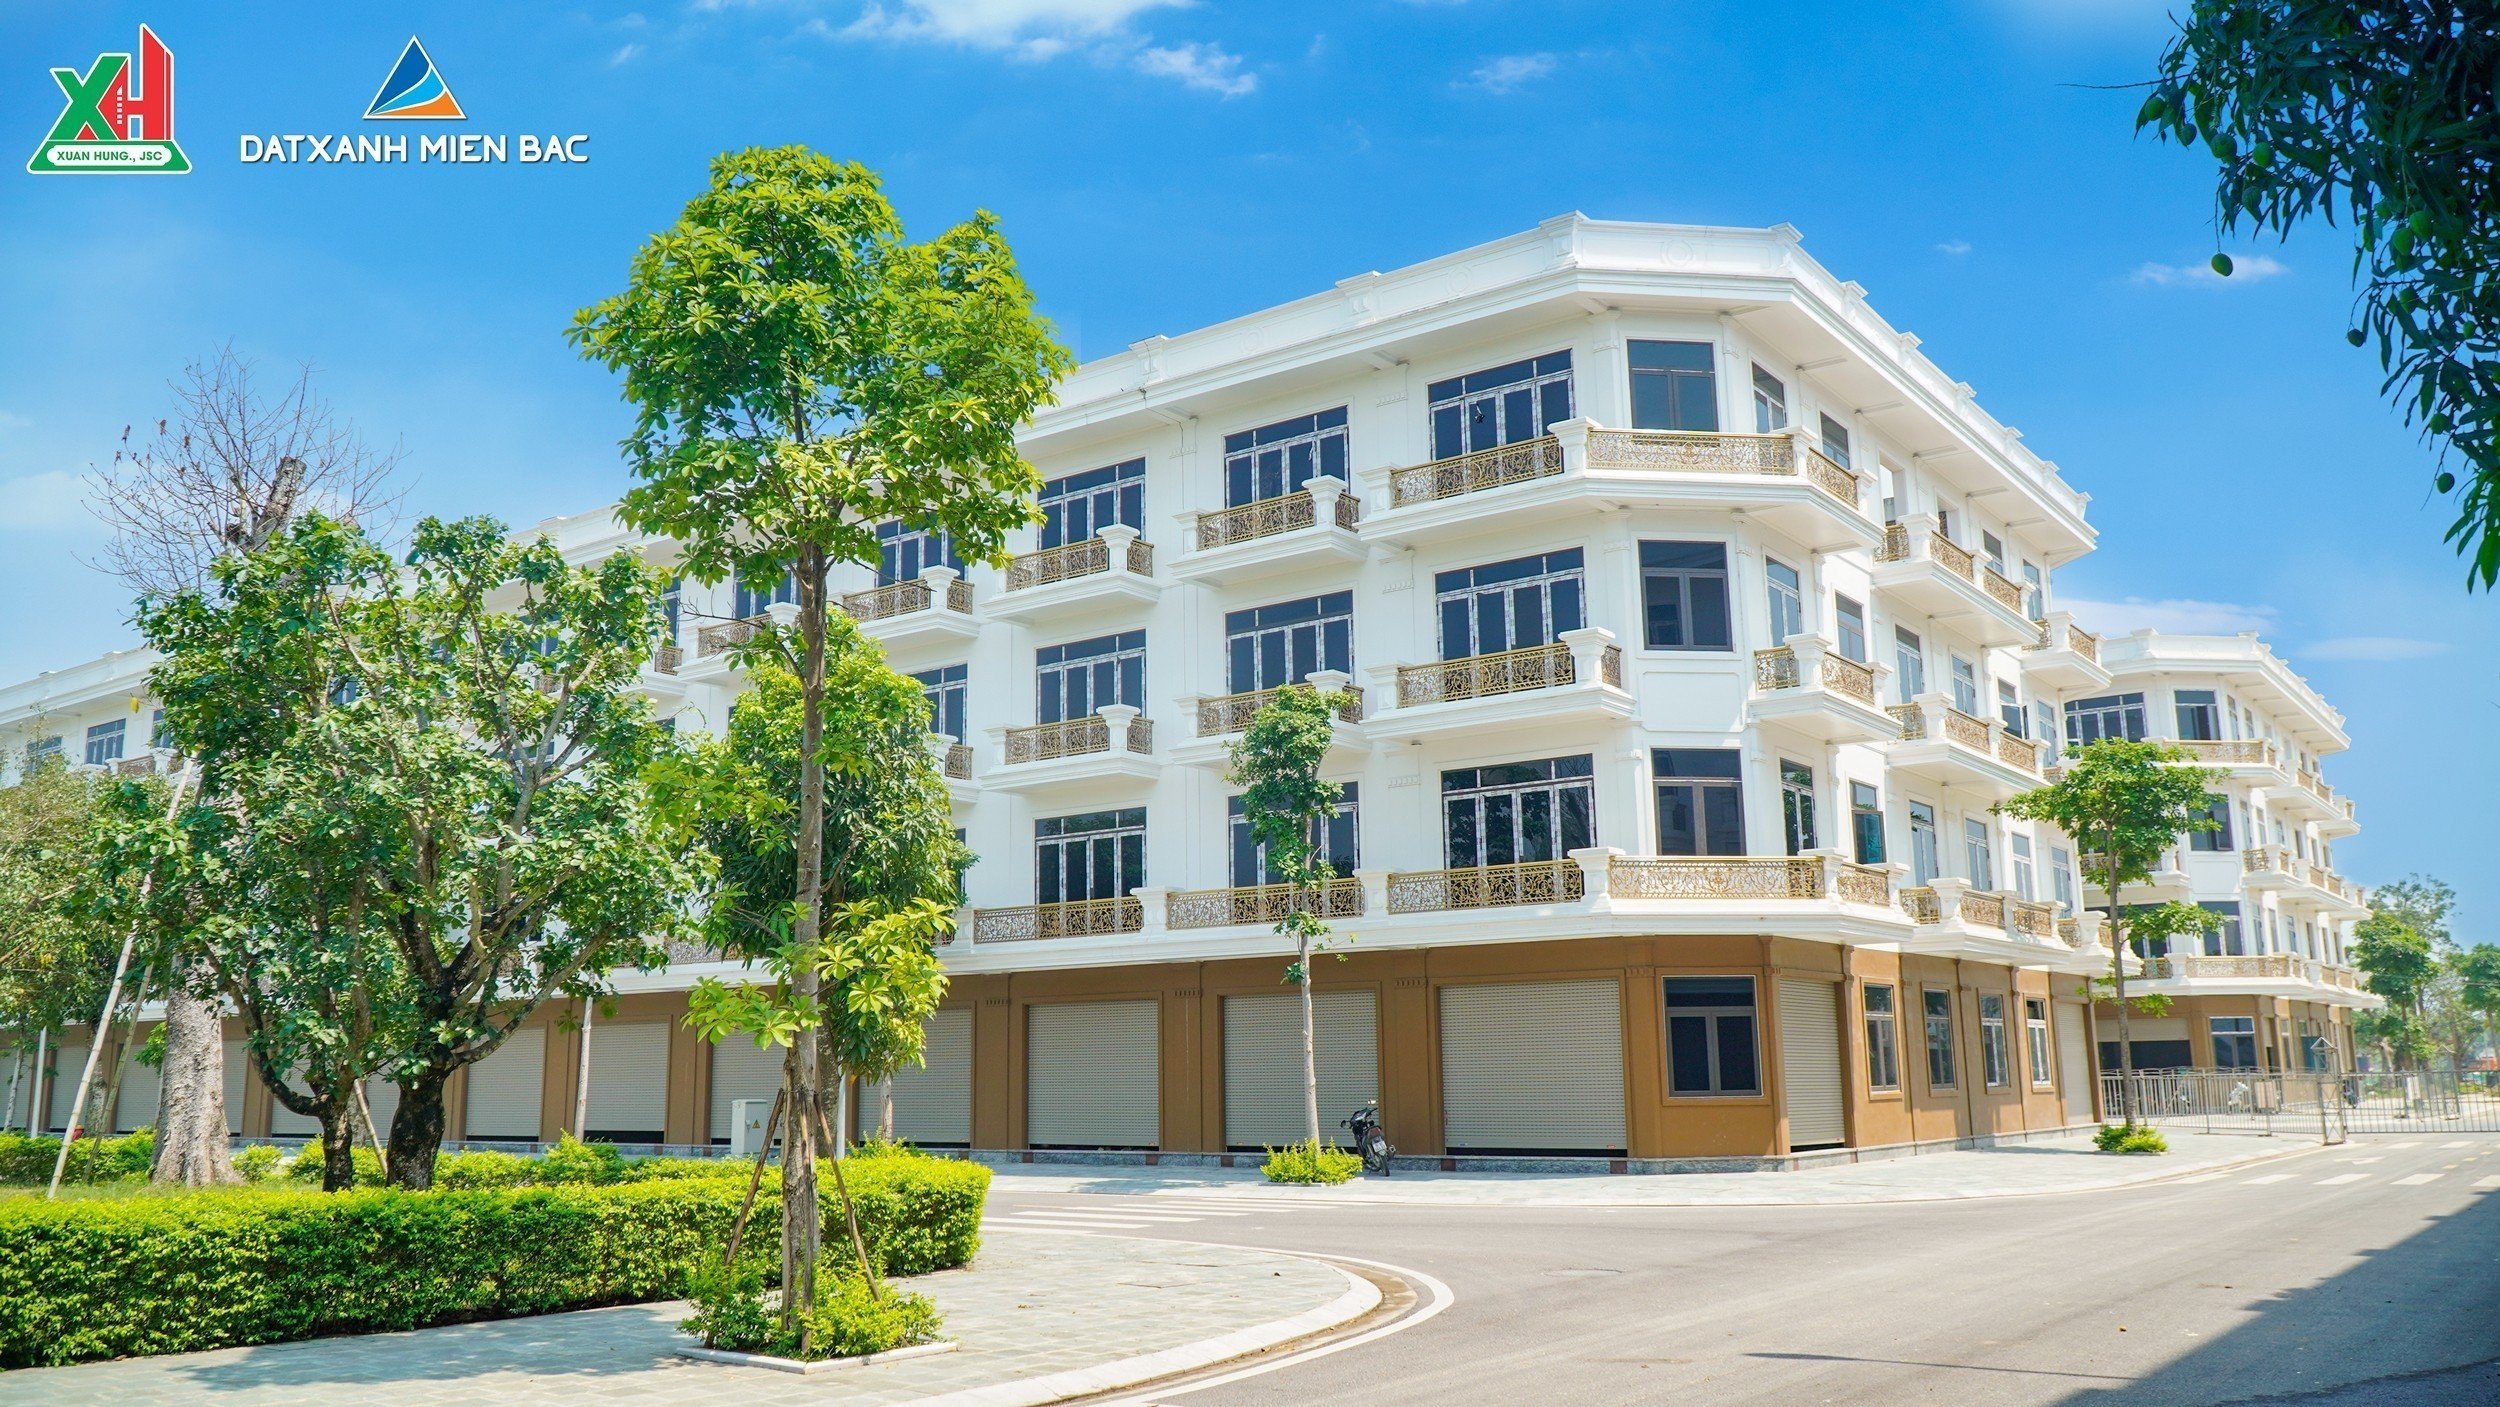 Cần bán nhà tại Khu đô thị Xuân Hưng, Thanh Hóa, diện tích 60-75-90m2 3